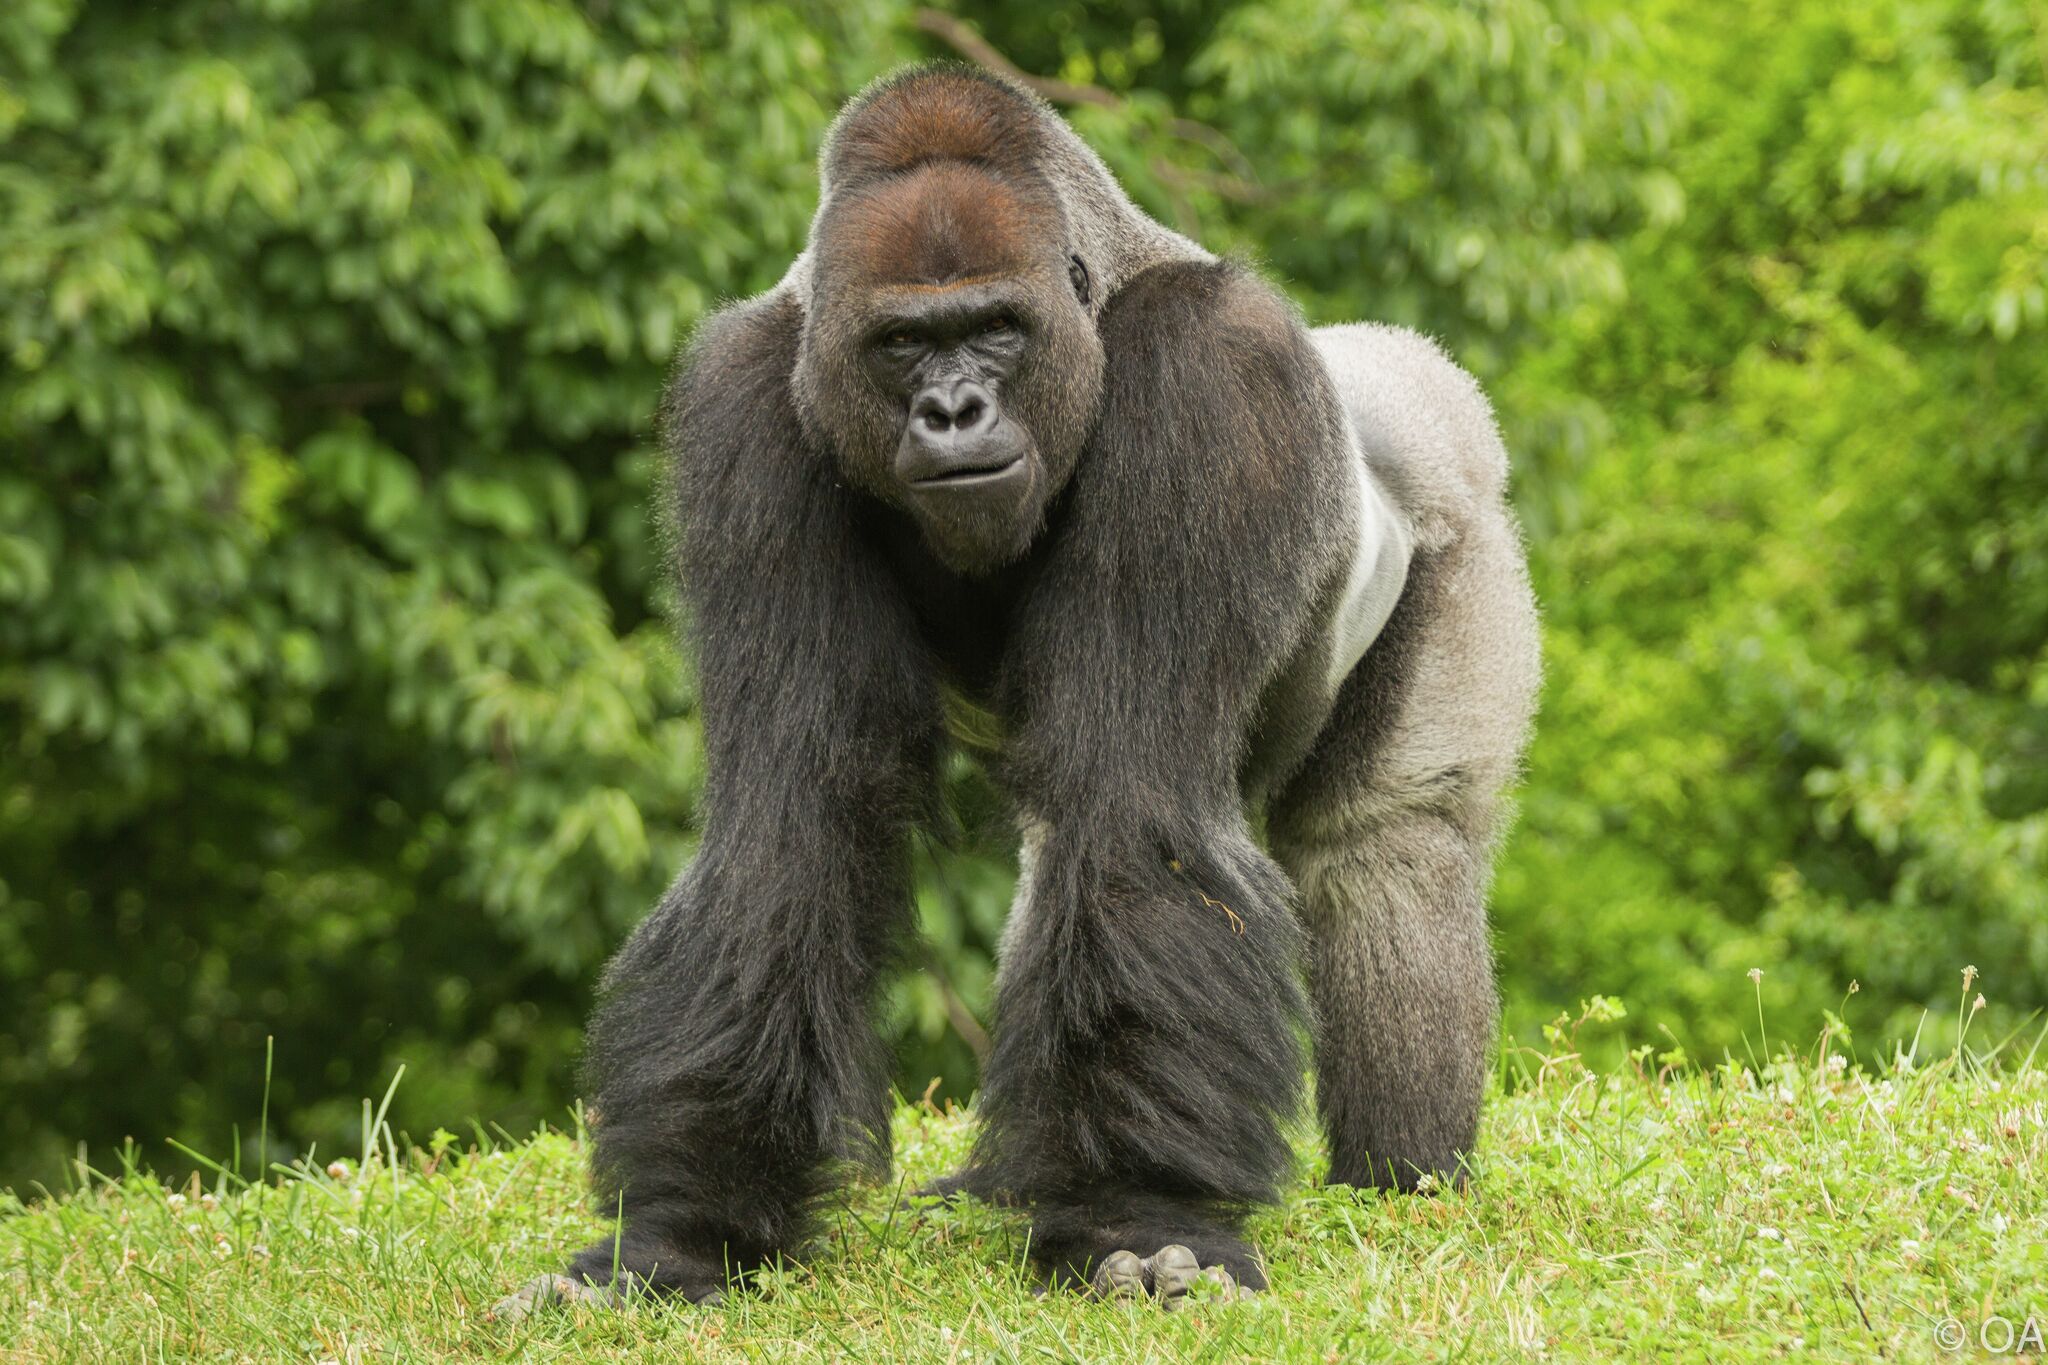 San Antonio zoo breaks ground on new gorilla habitat